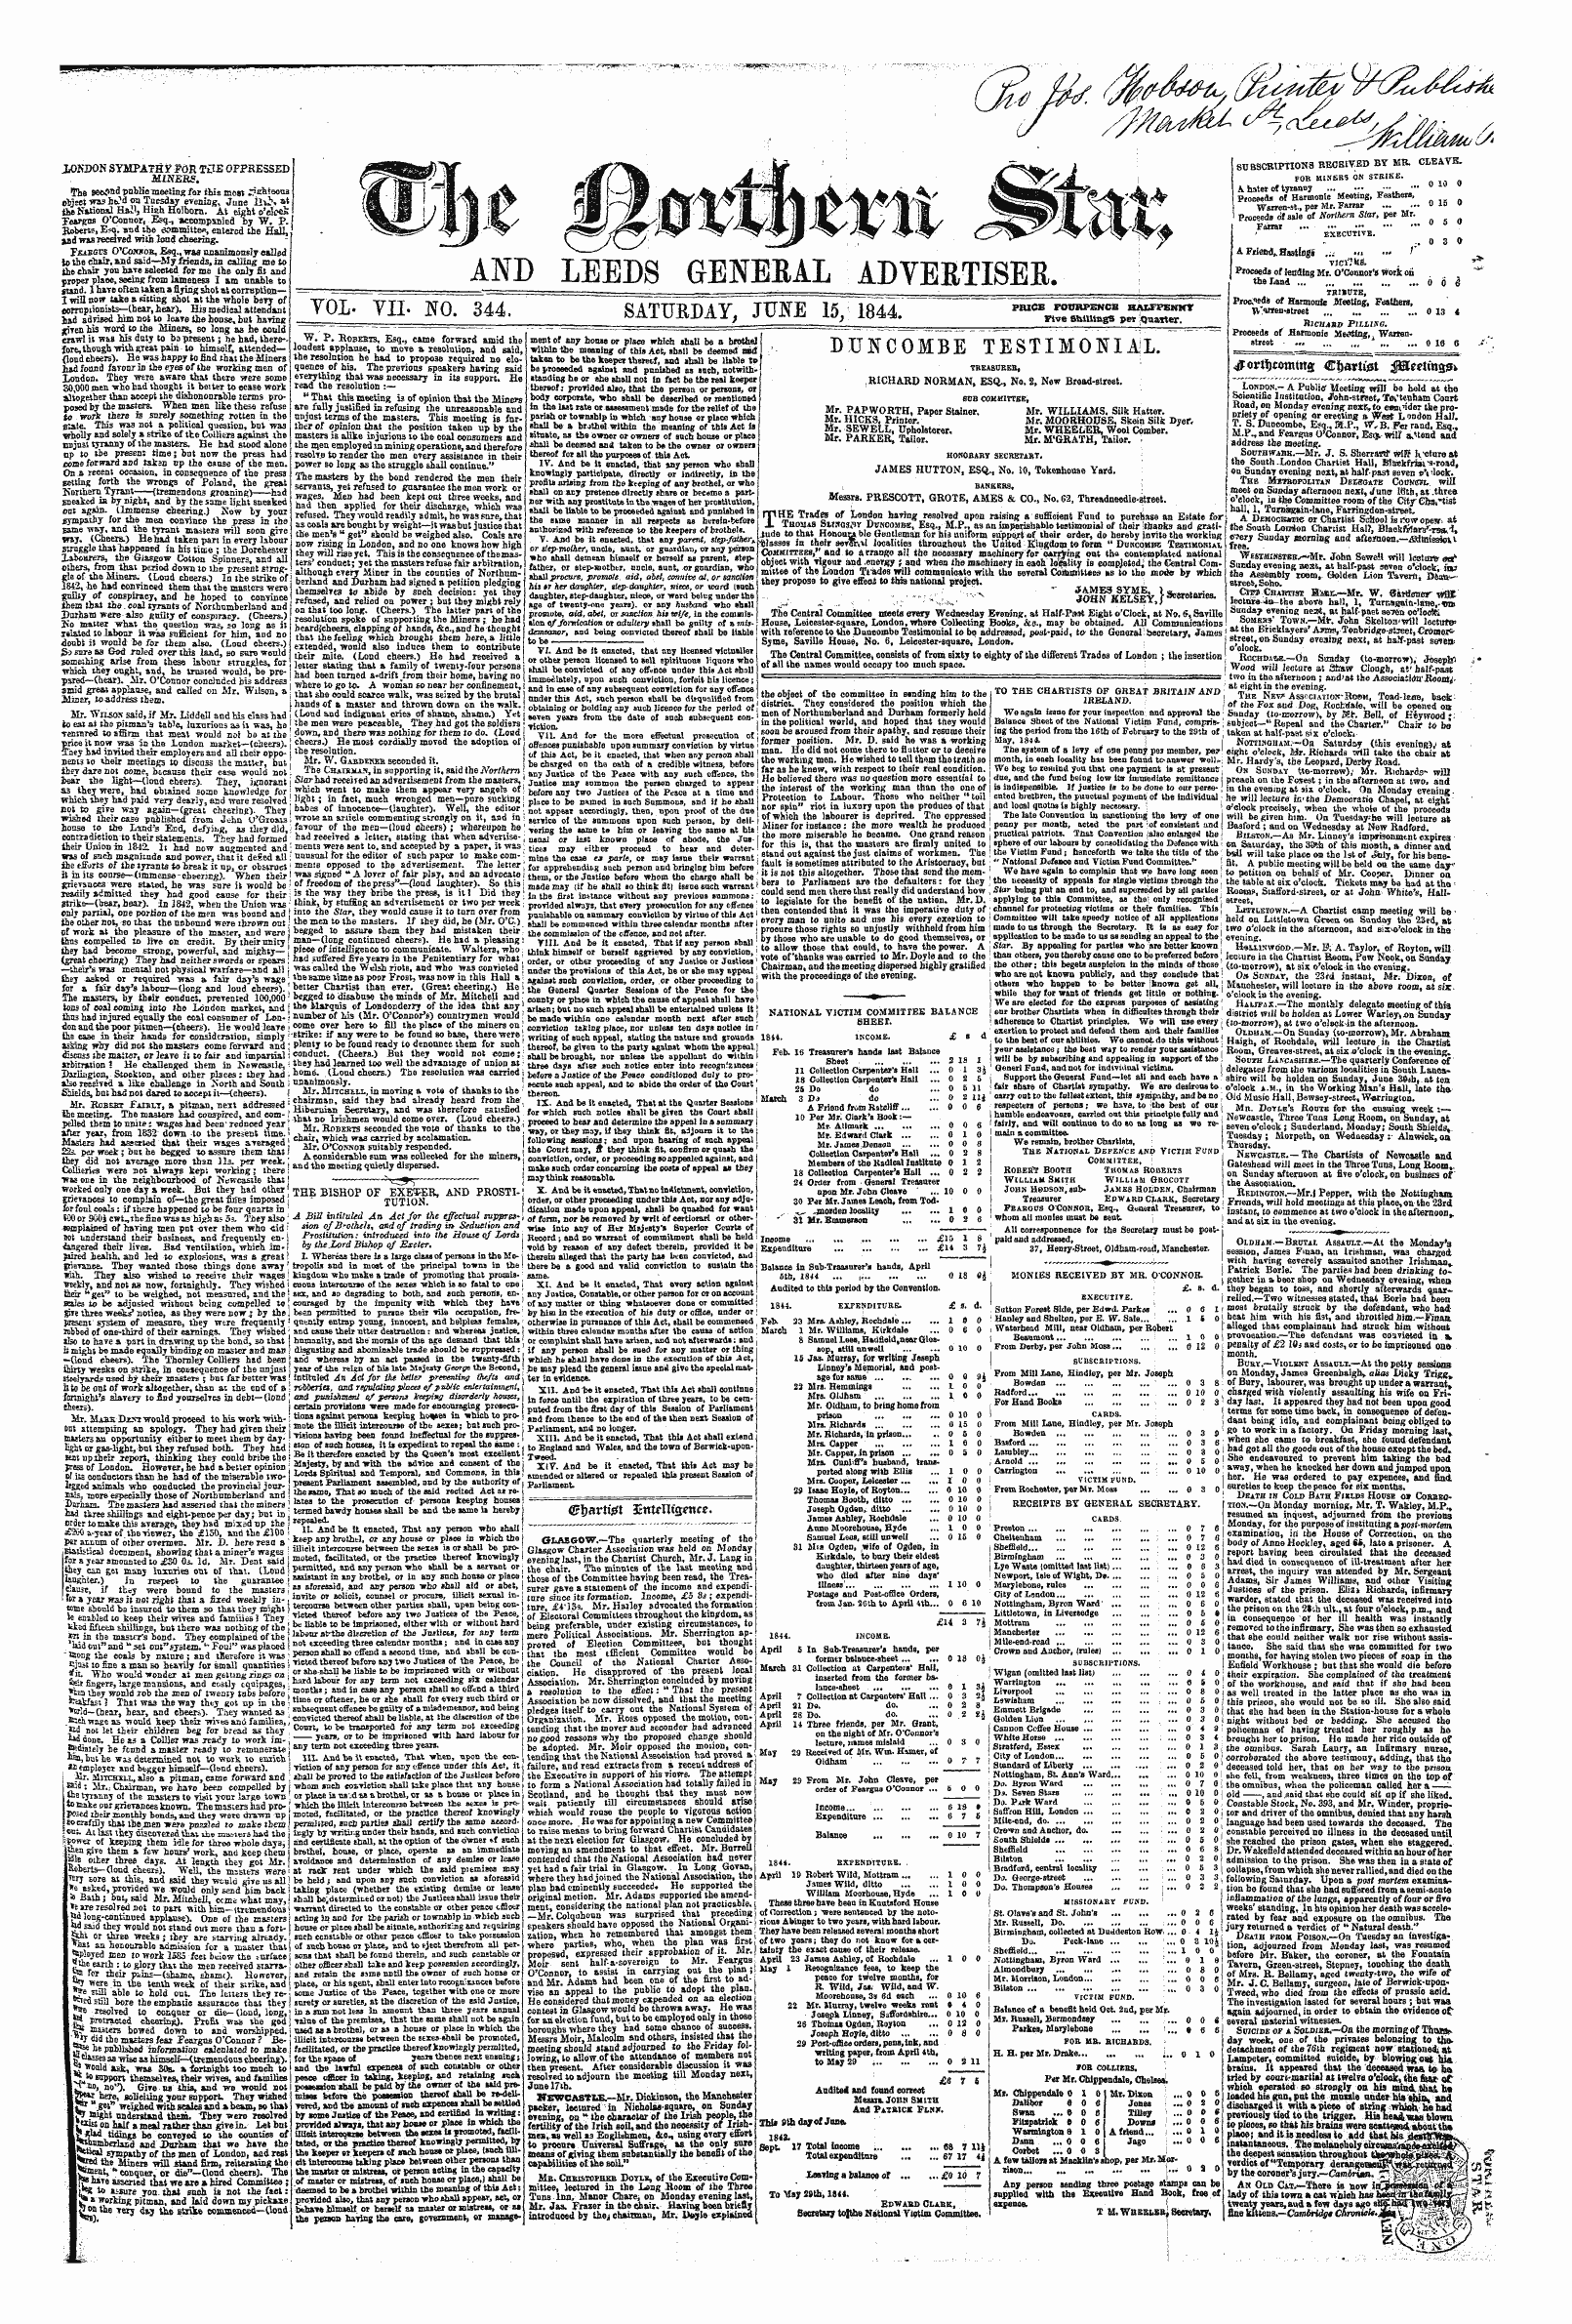 Northern Star (1837-1852): jS F Y, 1st edition - 4fortf)Tomtna Cijarttet $8lmm%Fr